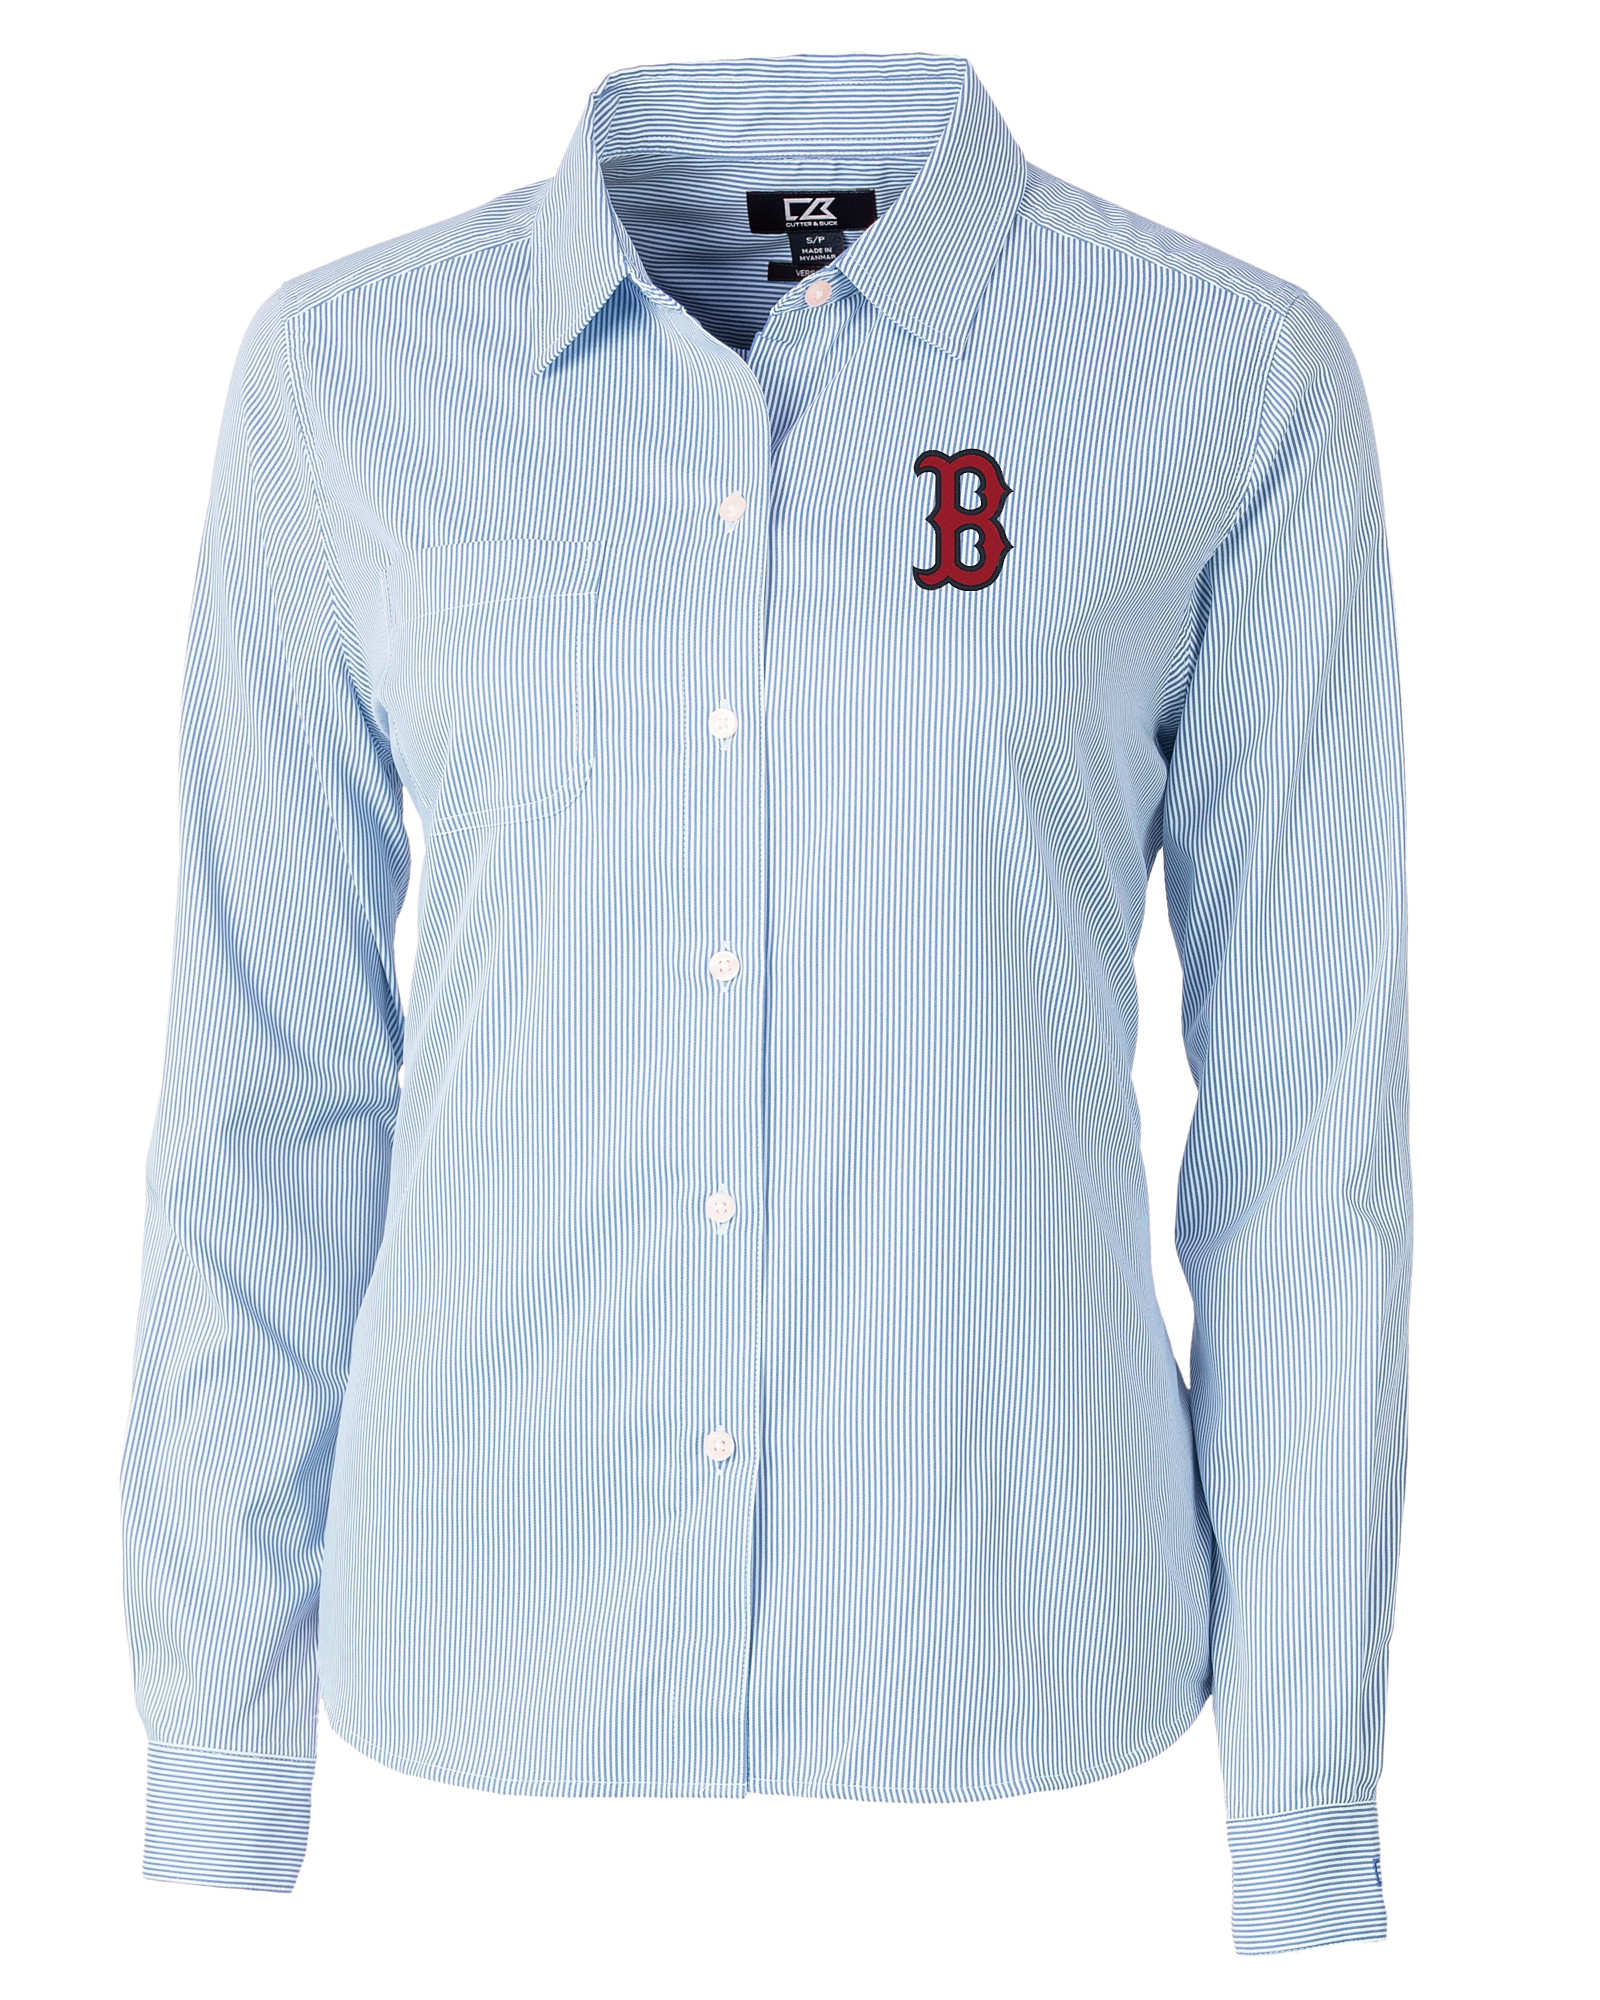 Boston Red Sox Cutter & Buck Versatech Pinstripe Stretch Womens Long Sleeve Dress Shirt